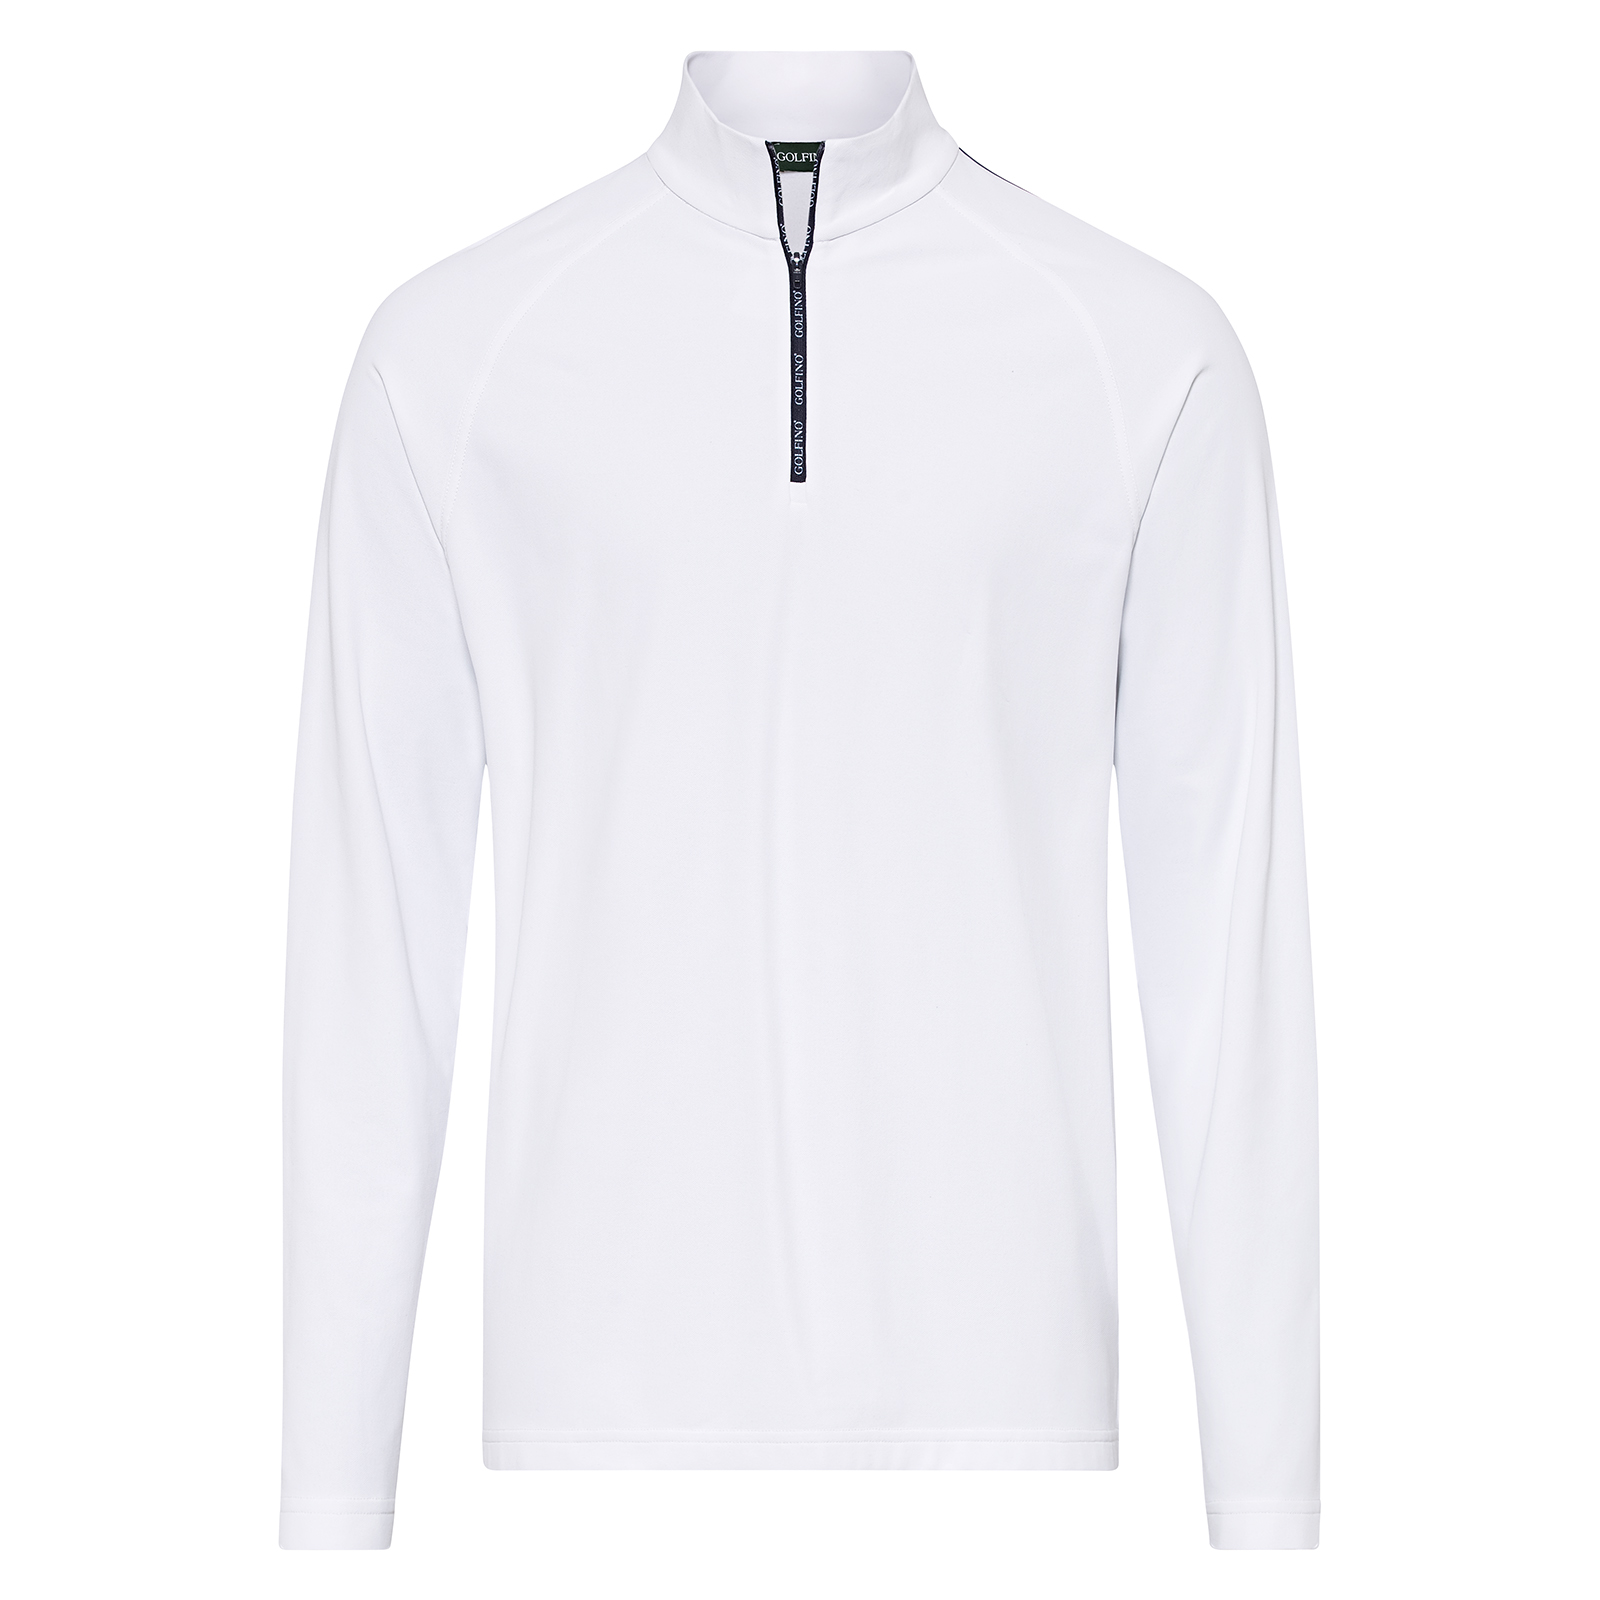 Men's sporty half-zip golf shirt with dry comfort function